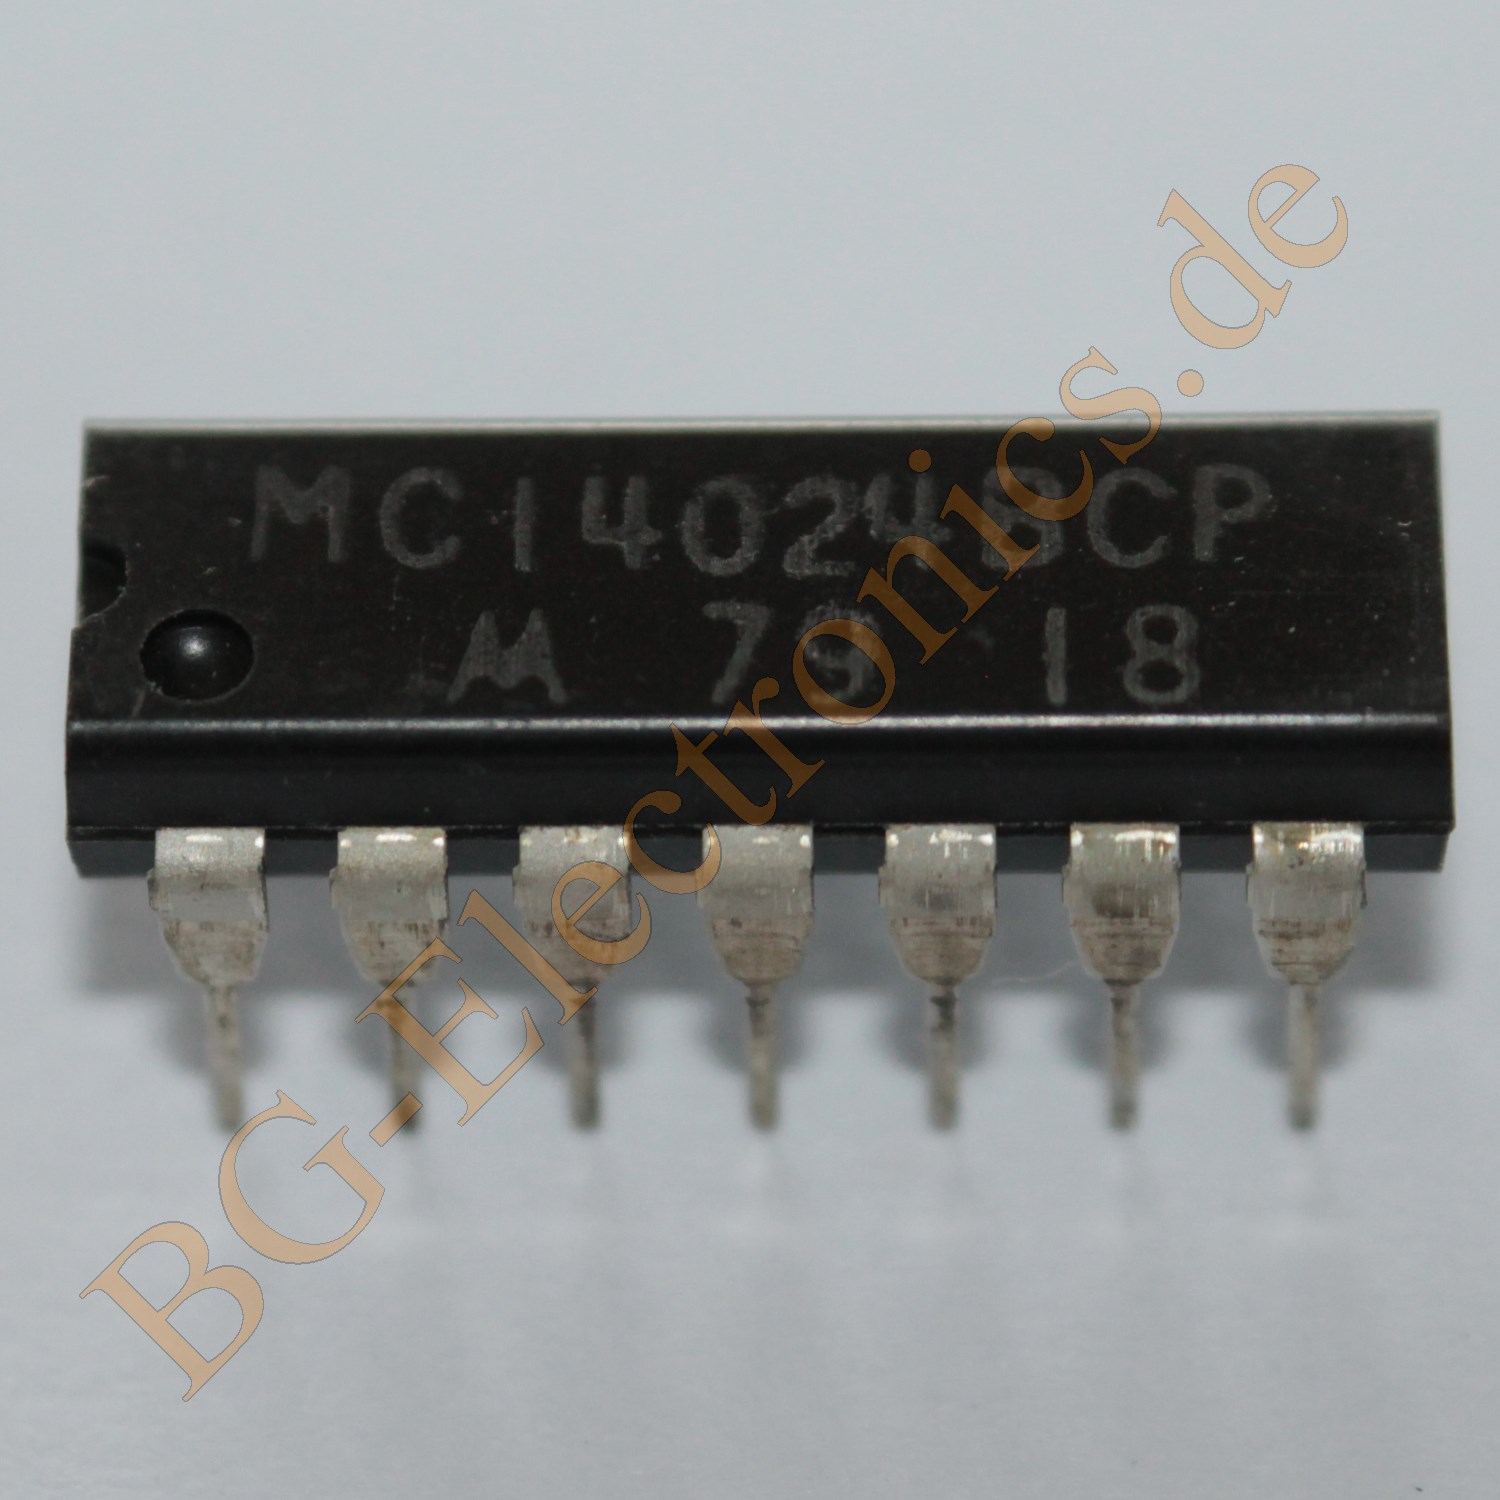 MC14024BCP